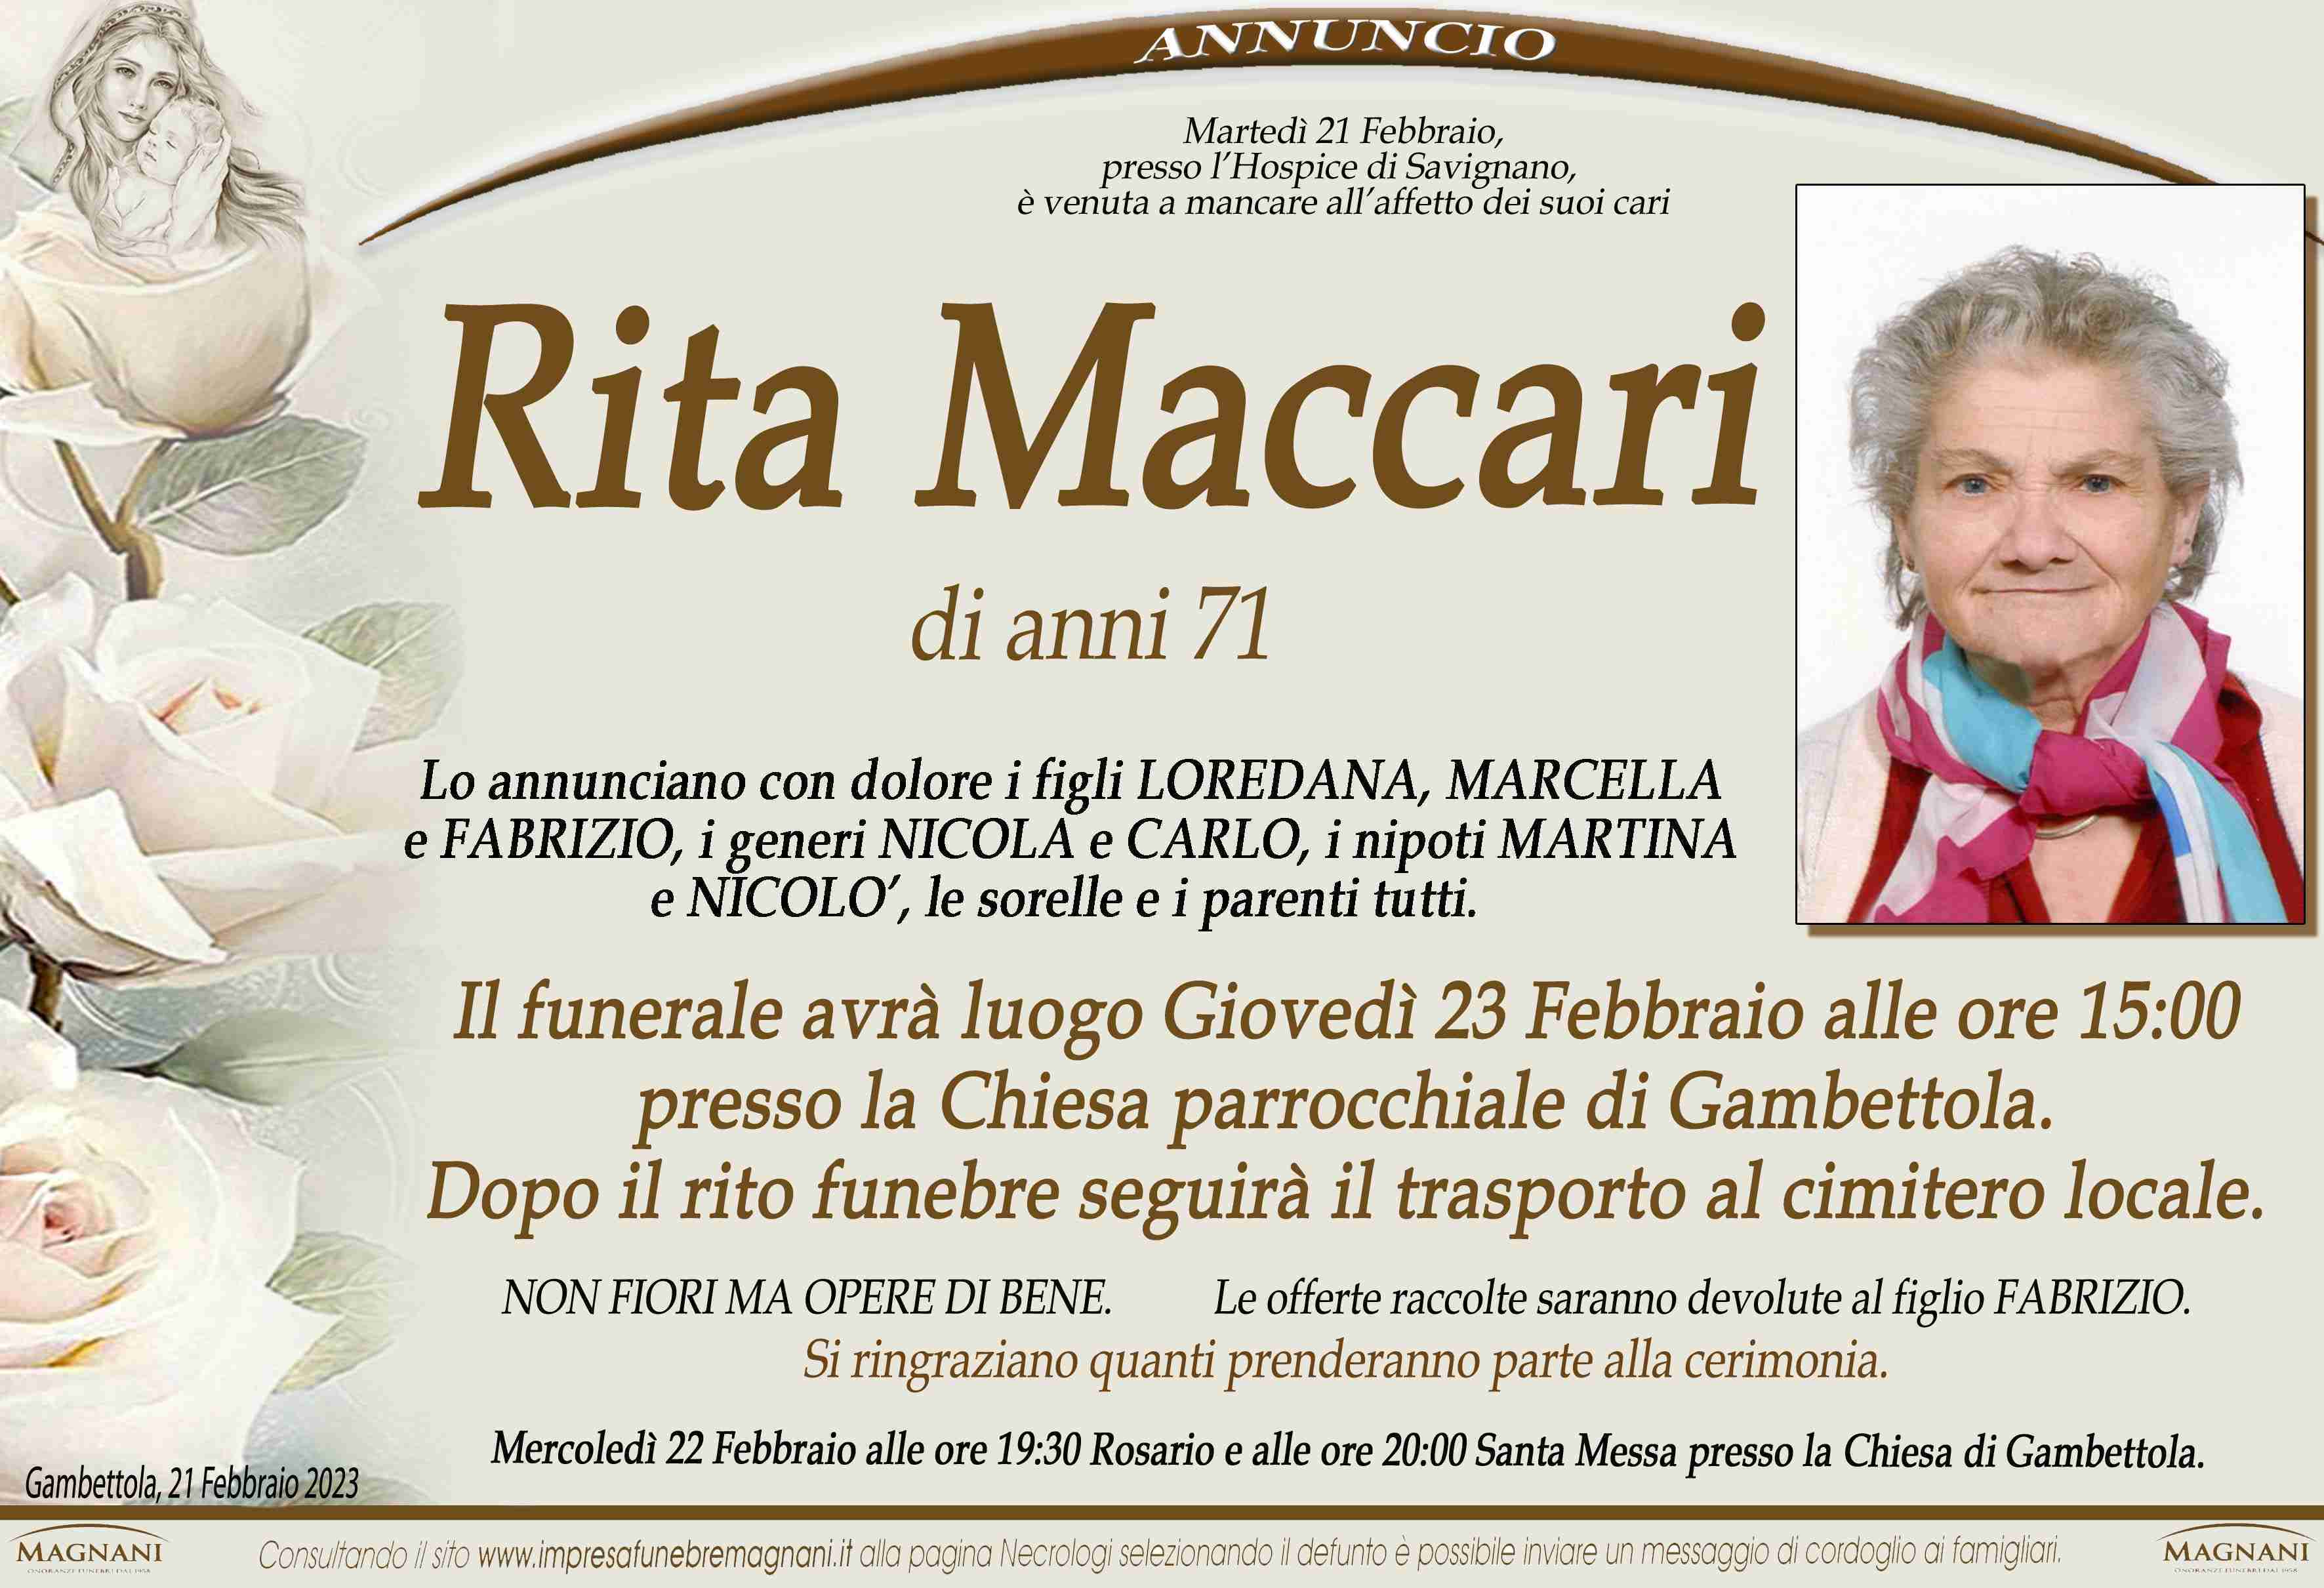 Rita Maccari